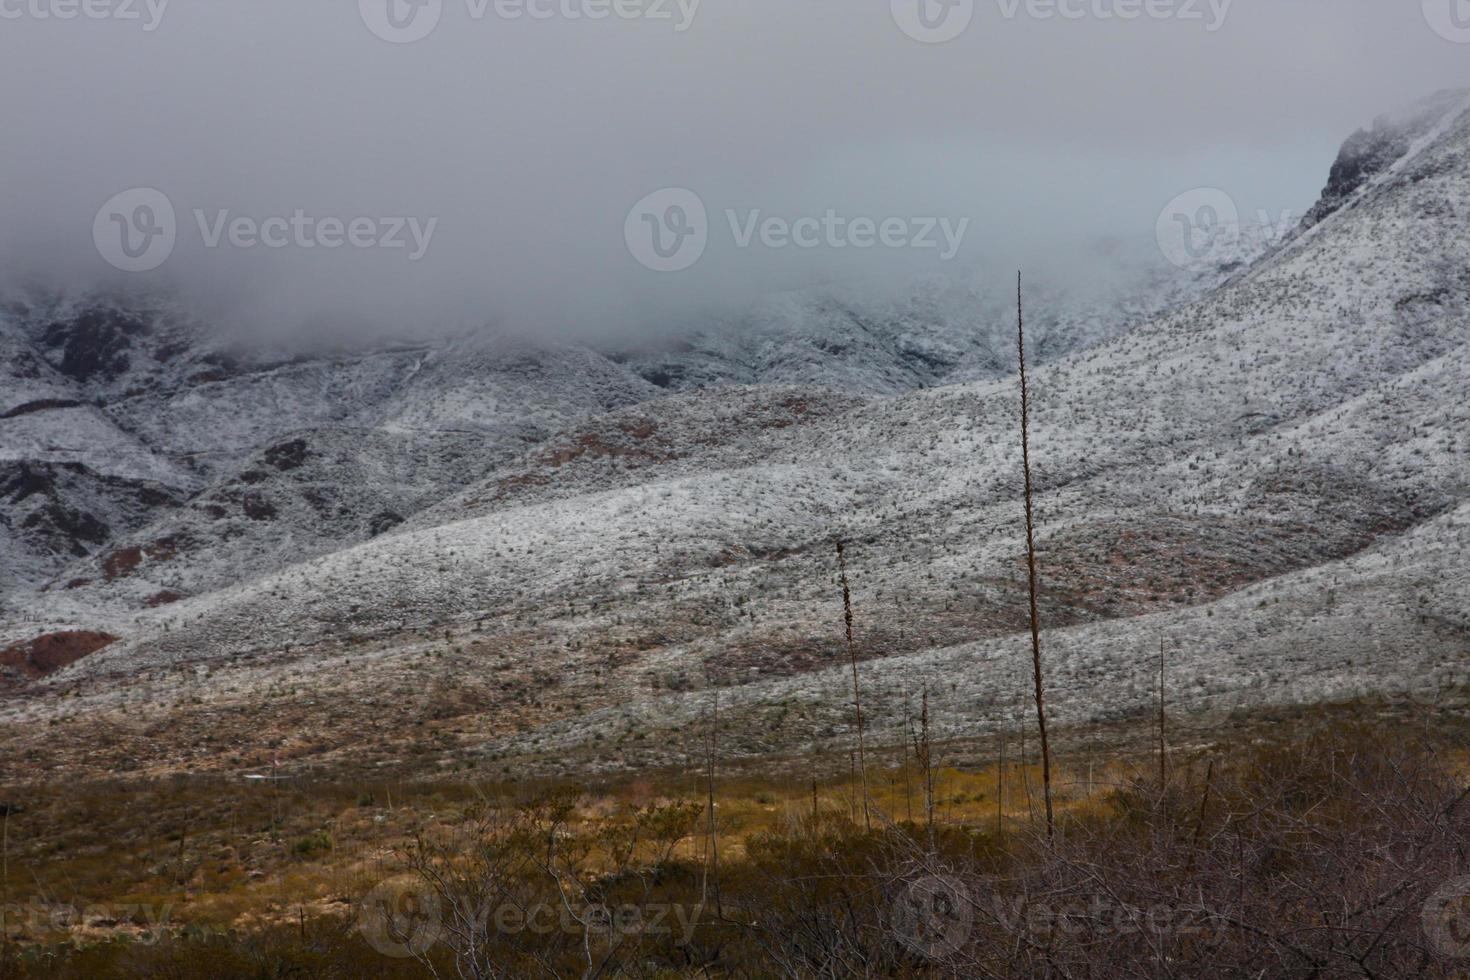 Franklin montagnes sur le côté ouest d'El Paso, Texas, couvertes de neige en regardant vers la route de montagne trans photo